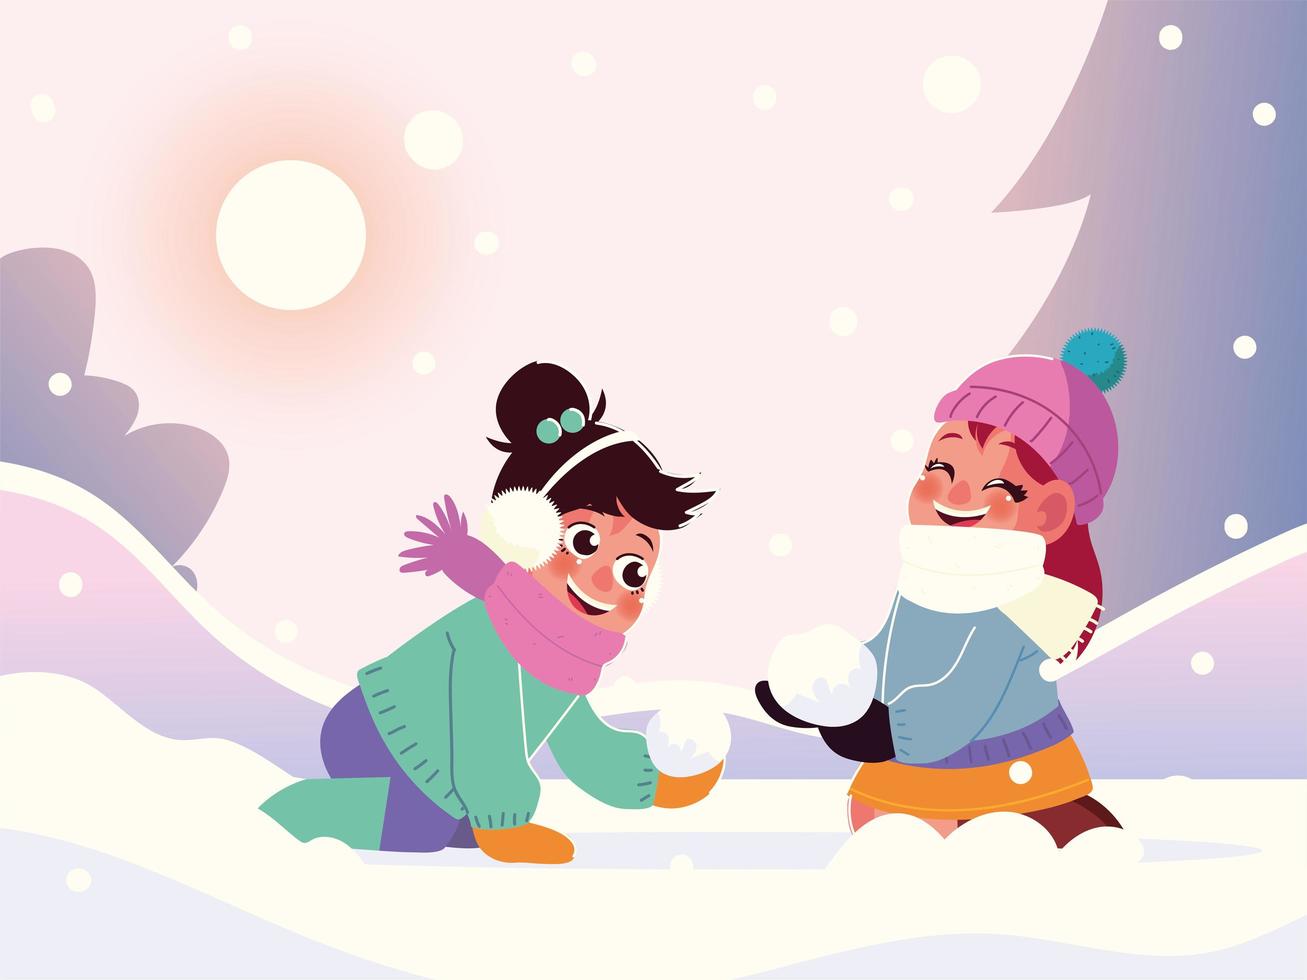 garotinhas engraçadas com roupas quentes brincando na neve, cena de inverno vetor